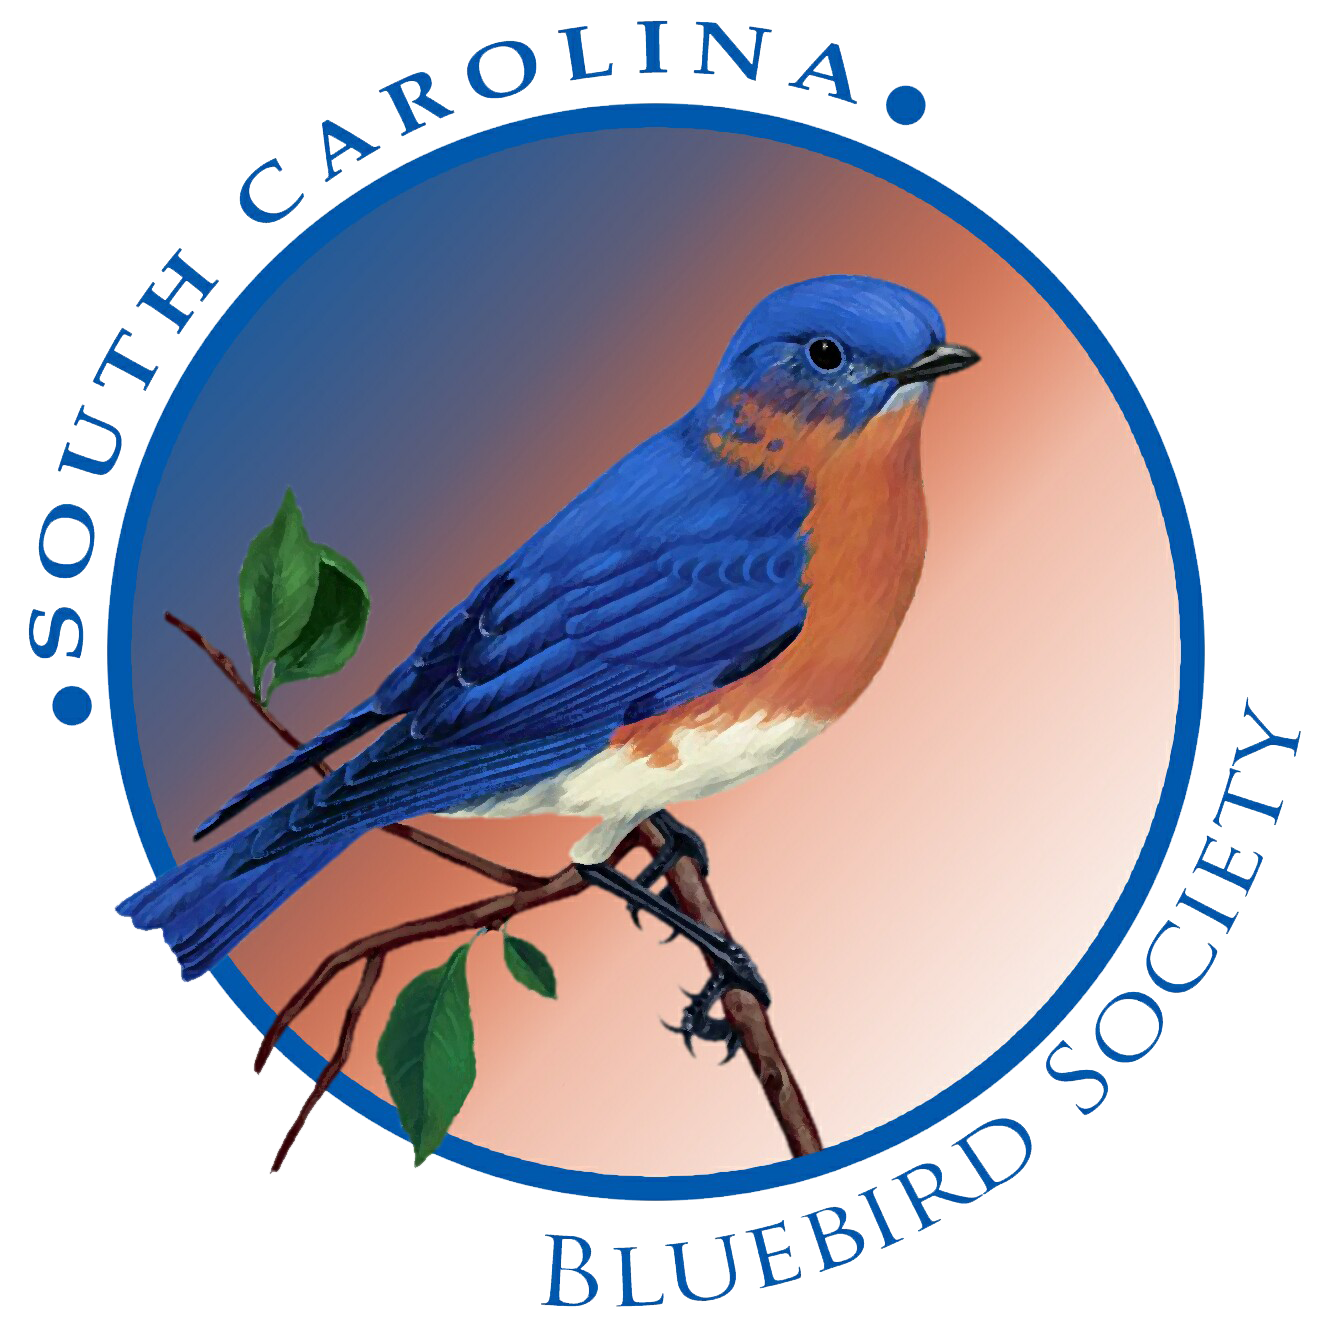 South Carolina Bluebird Association